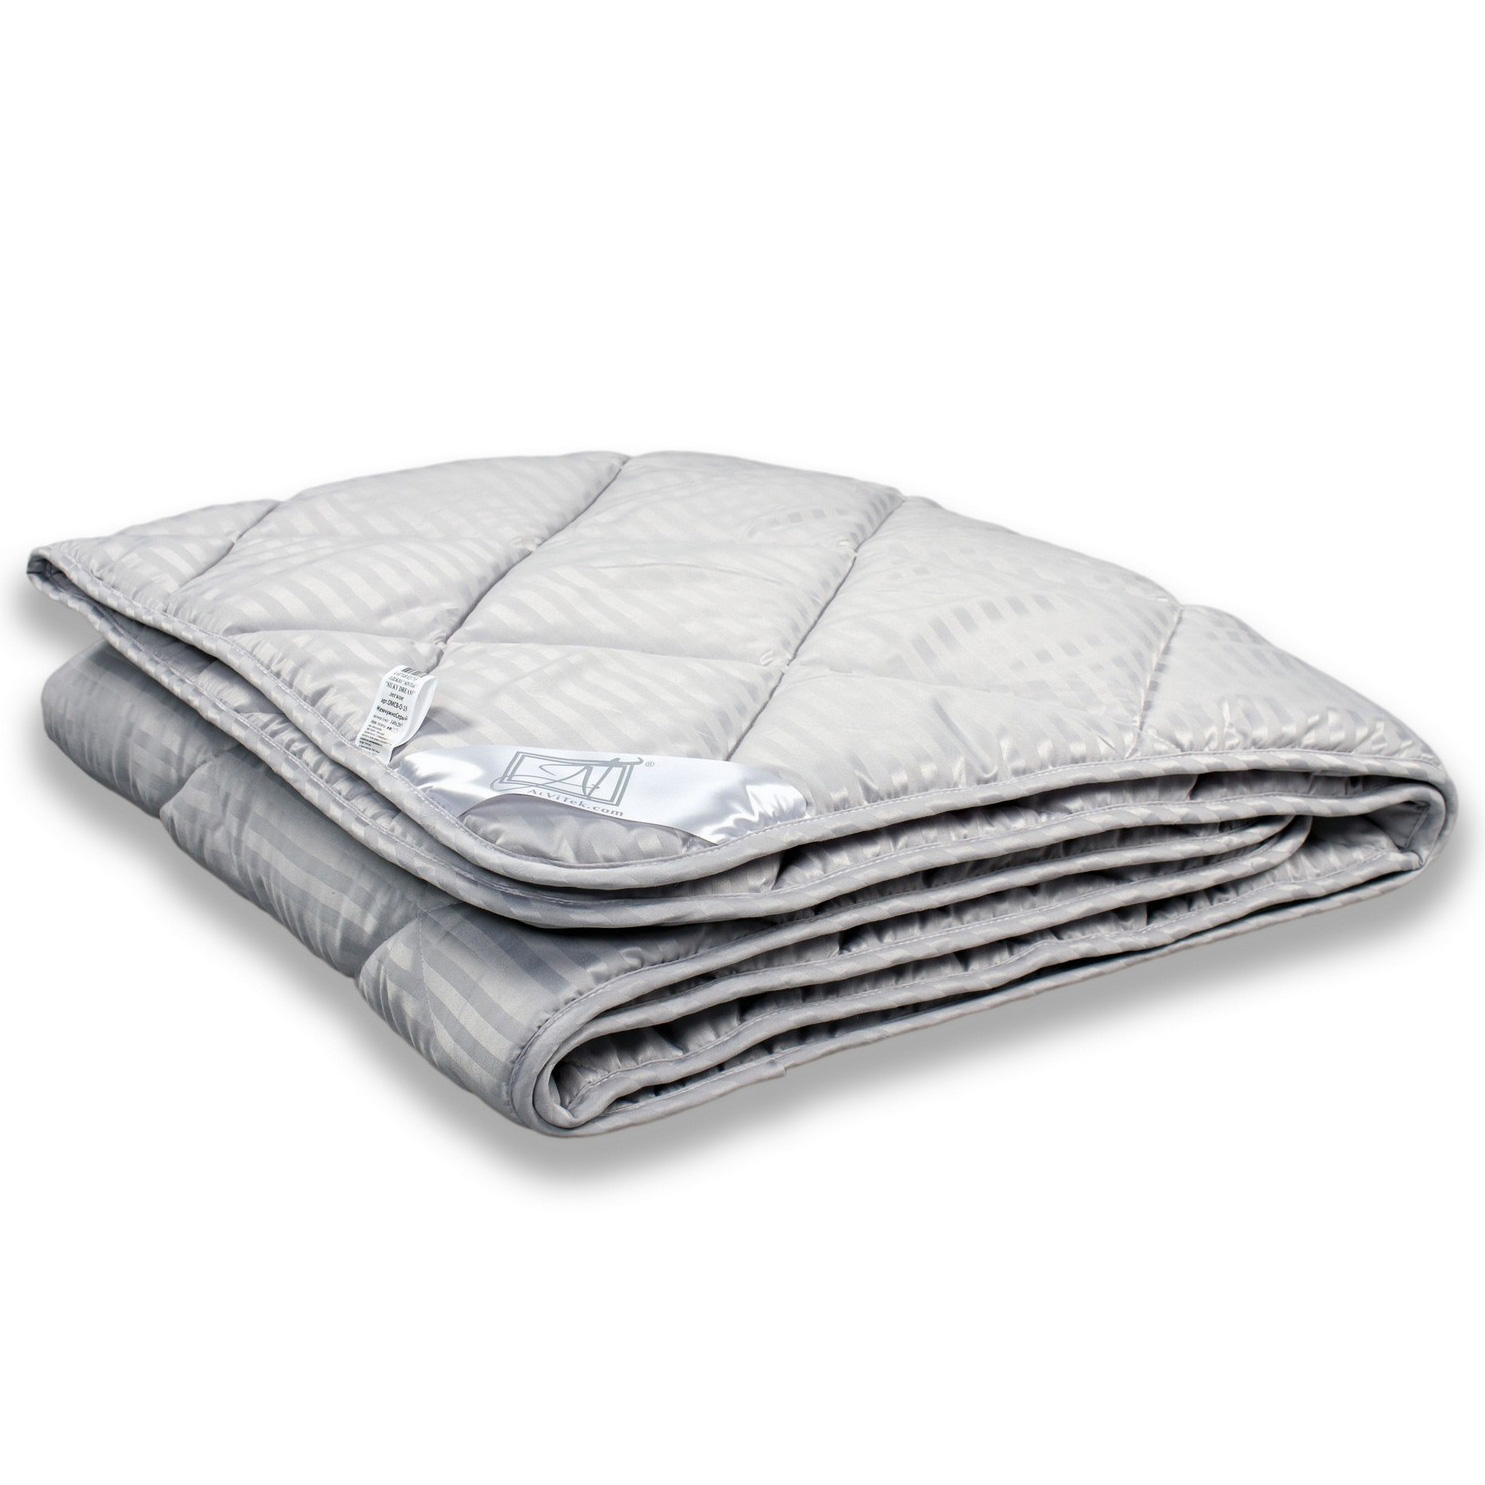 Одеяло Jessica цвет: жемчужно-серый (140х205 см), размер 140х205 см